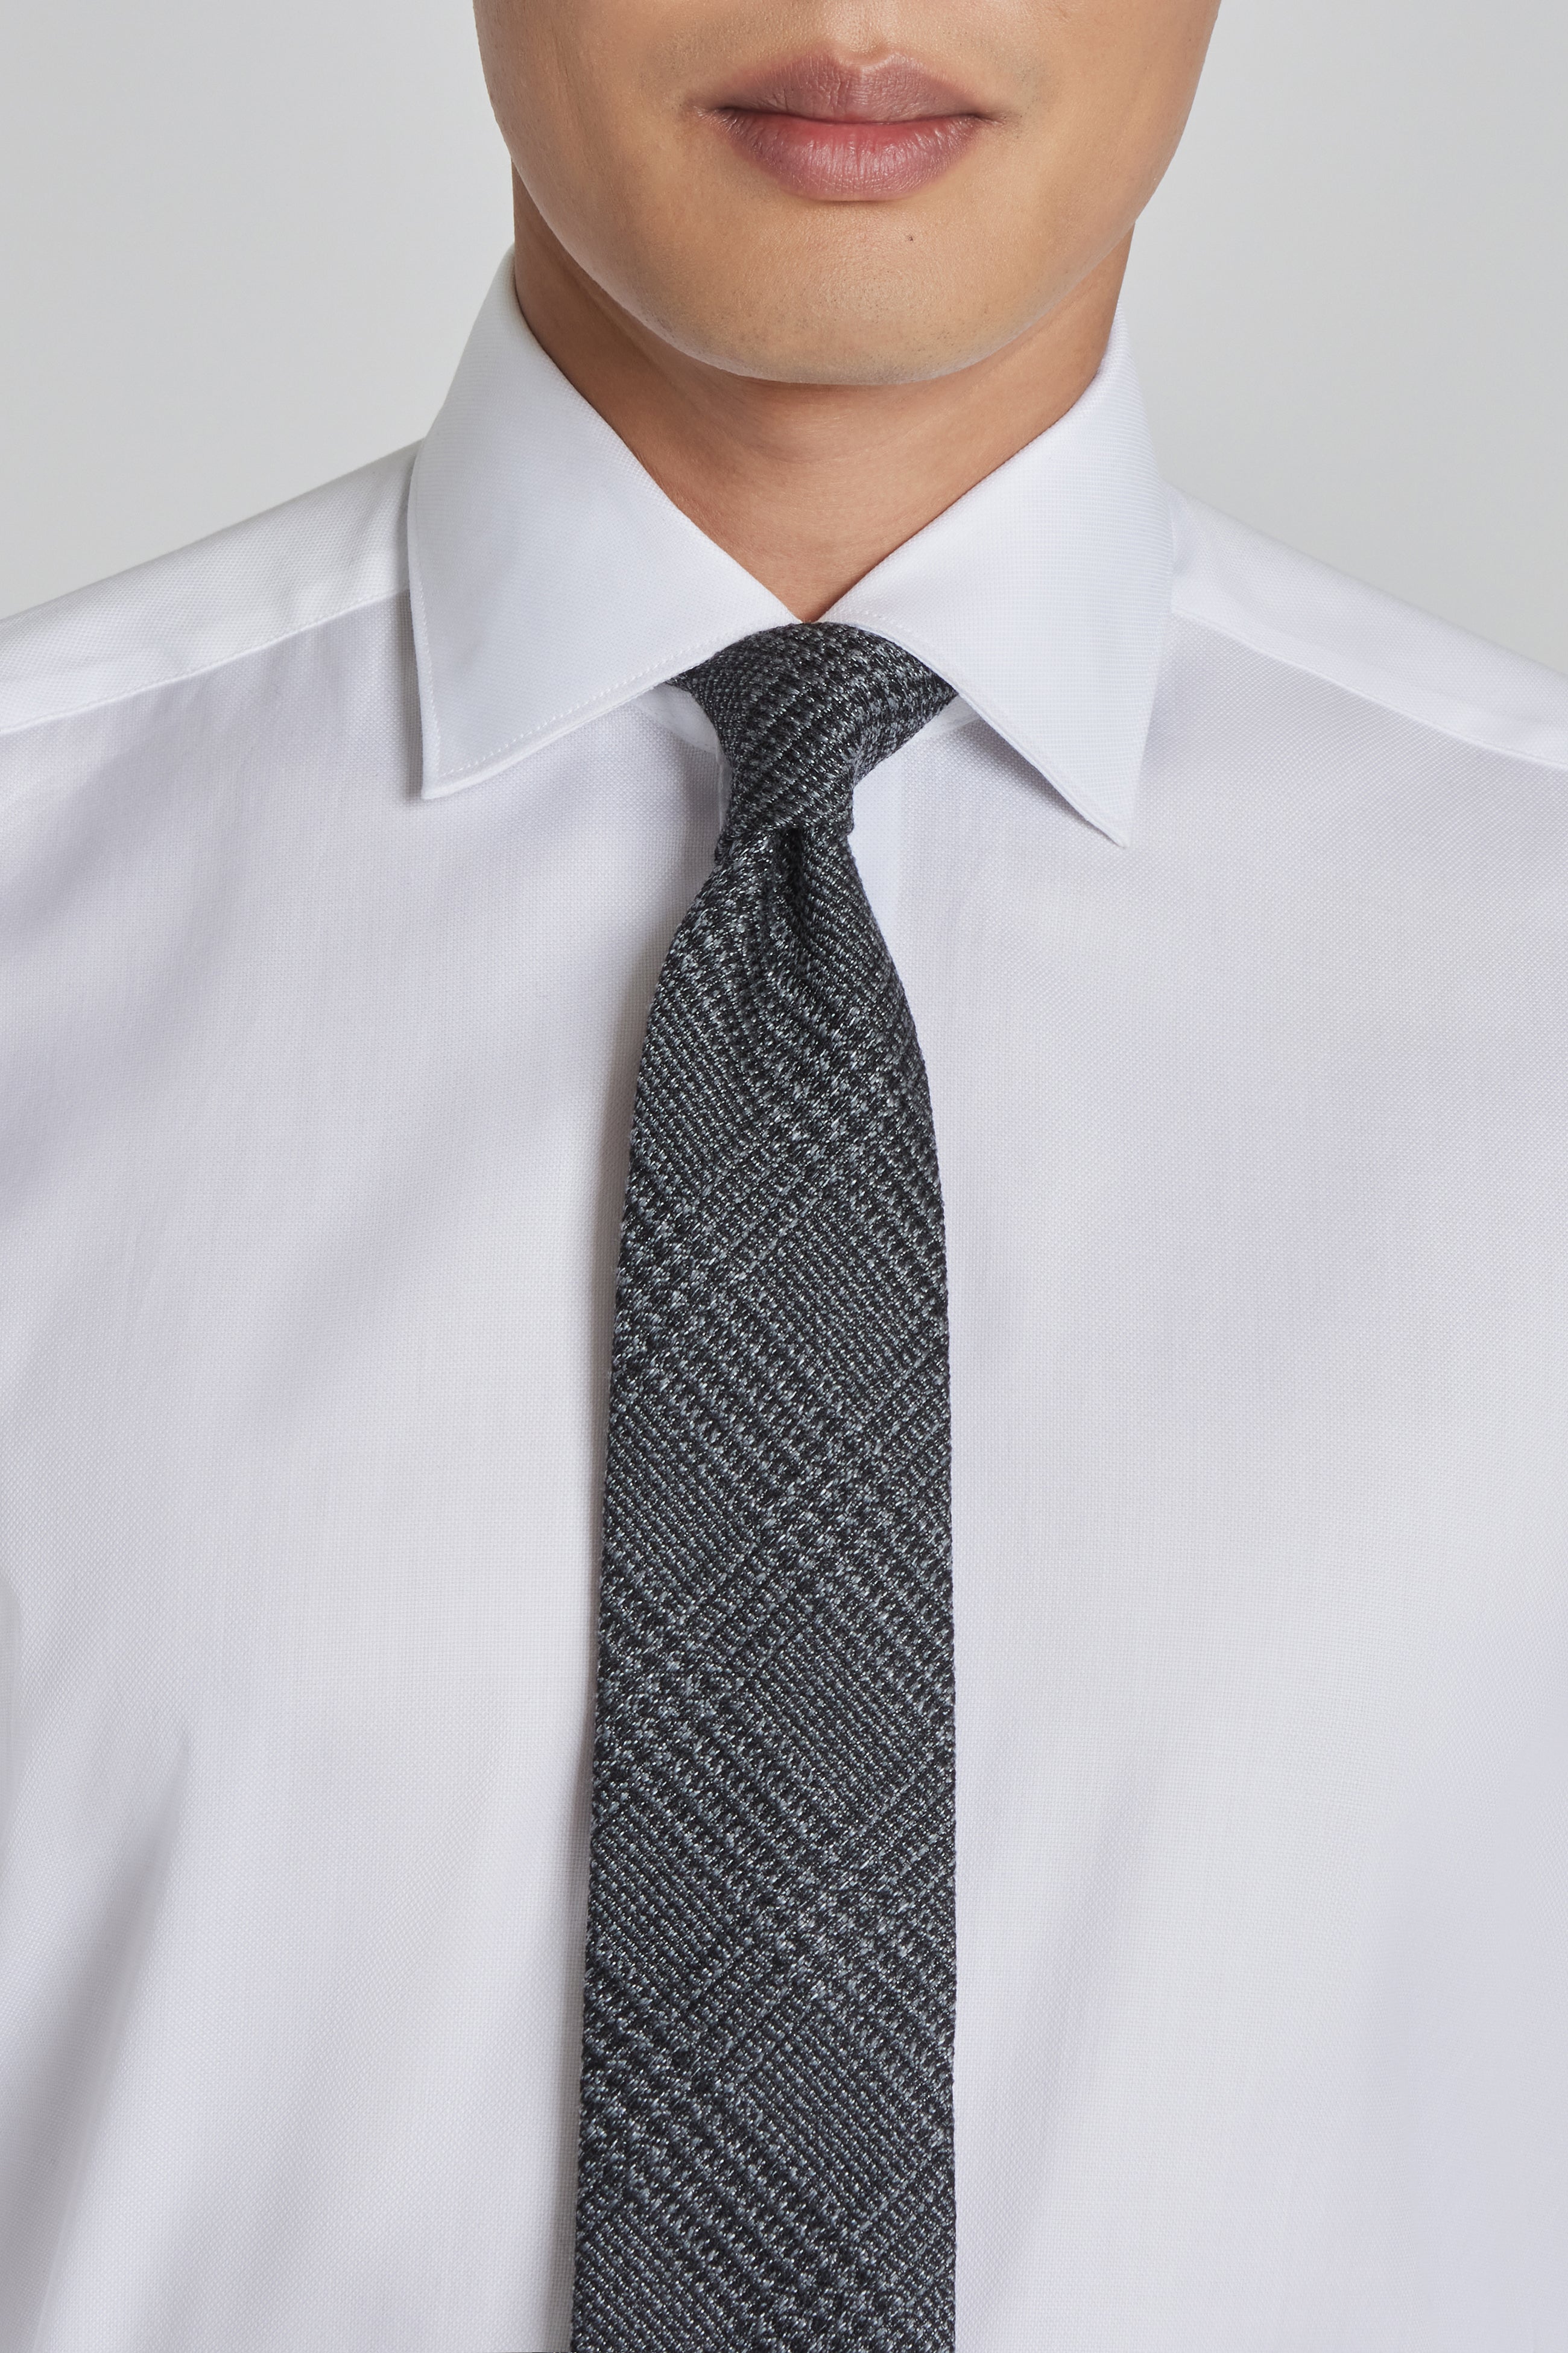 Vue alternative 2 Cravate Tissée Prince de Galles Anthracite